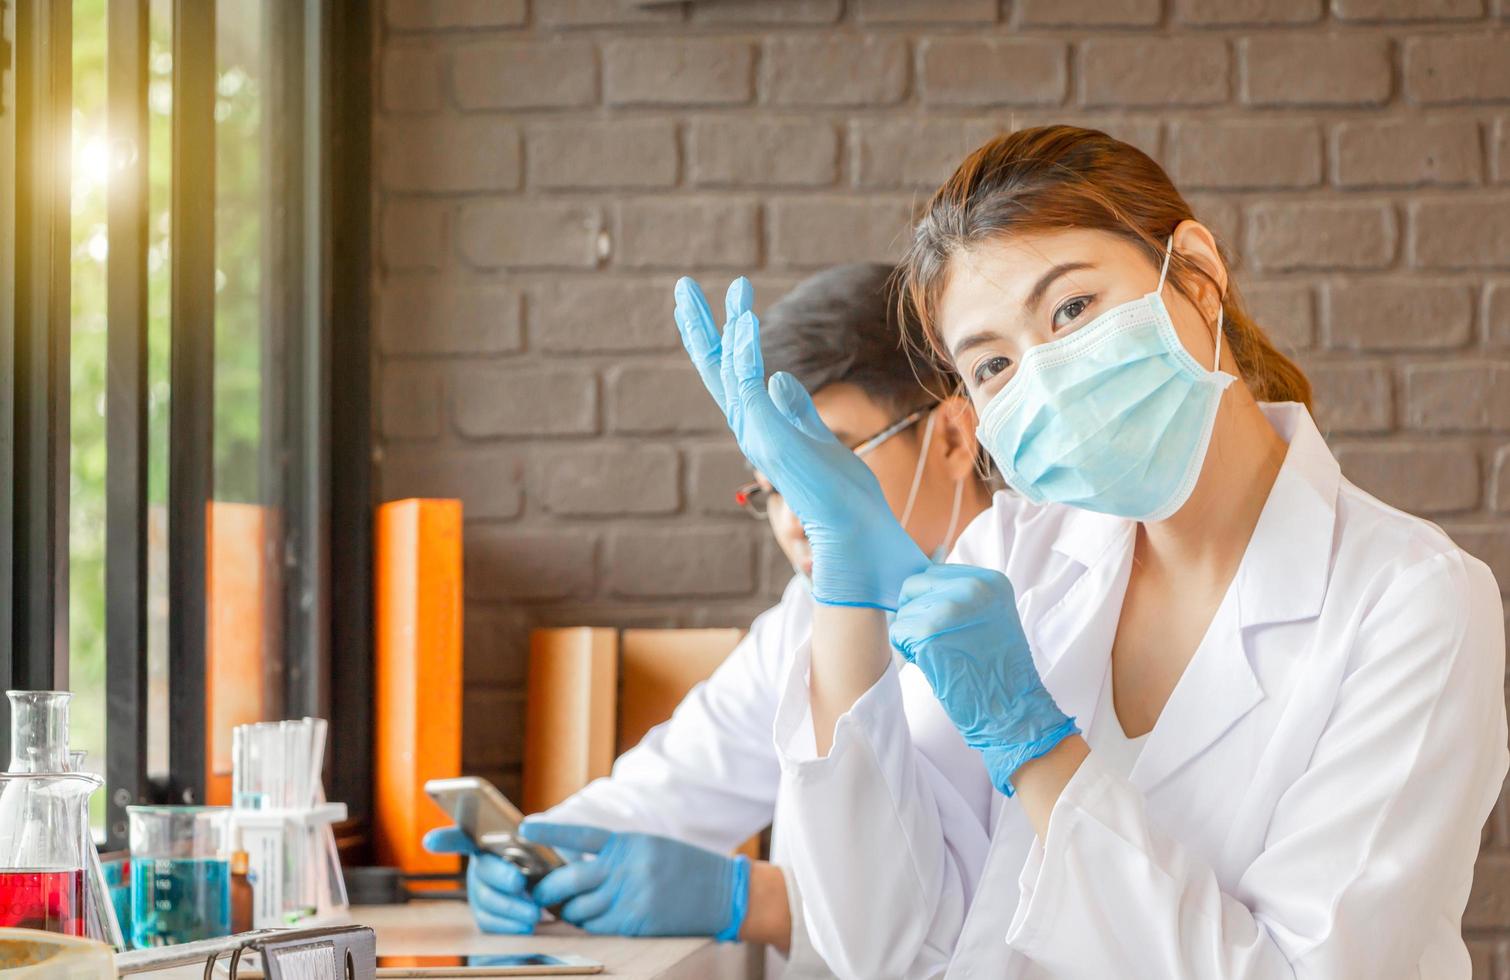 equipo científico haciendo investigación en laboratorio clínico, mujer joven con una máscara médica y usando una arboleda médica mirando la cámara foto